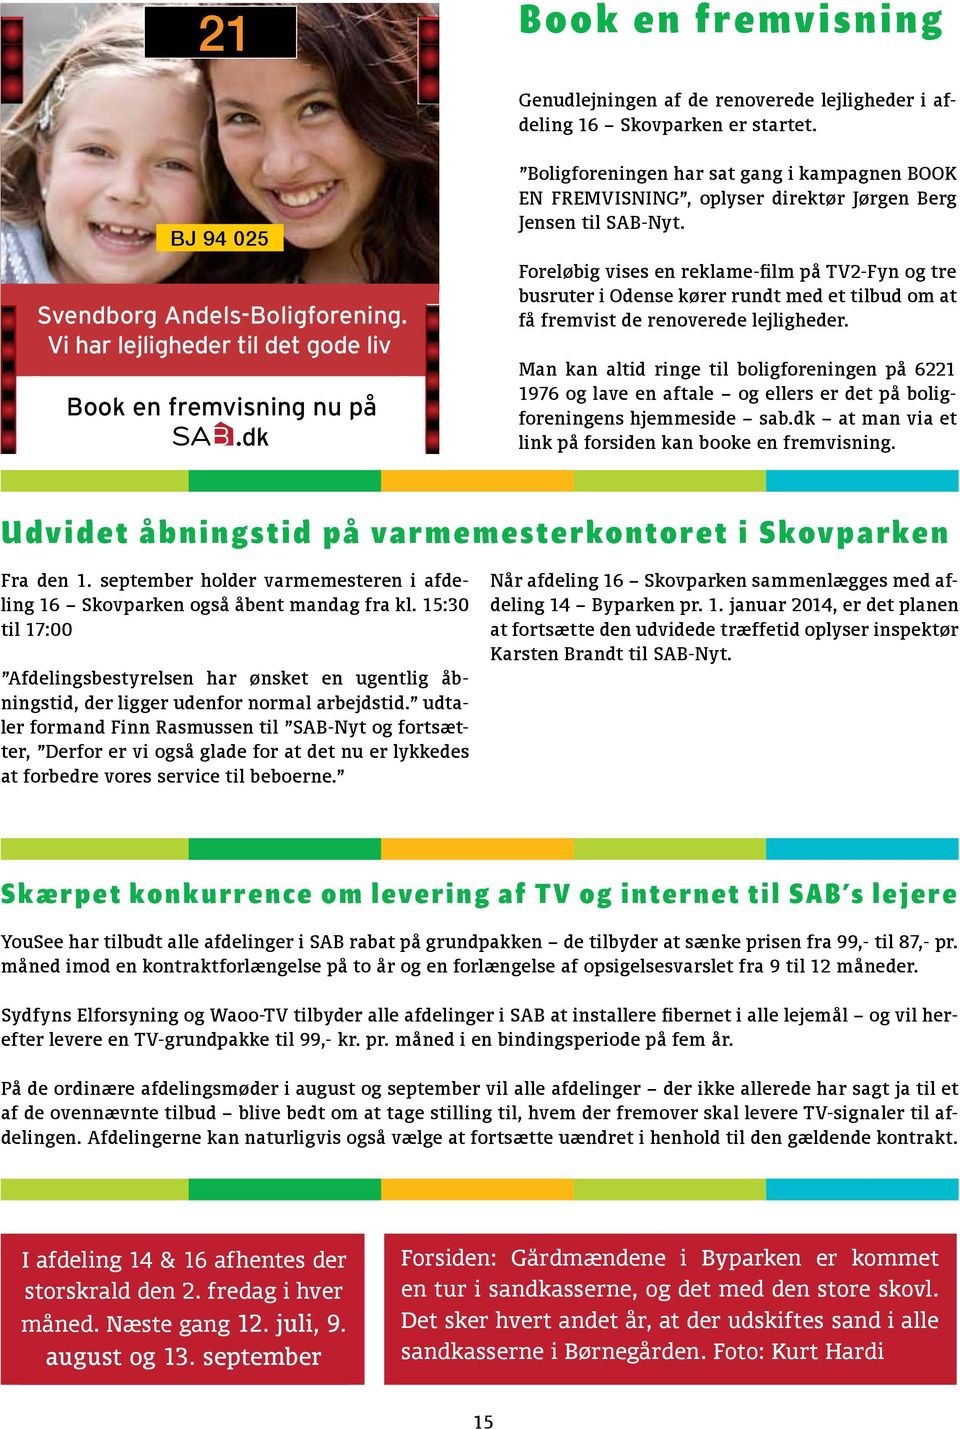 dk Svendborg Andels-Boligforening Boligforeningen har sat gang i kampagnen BOOK EN FREMVISNING, oplyser direktør Jørgen Berg Jensen til SAB-Nyt.